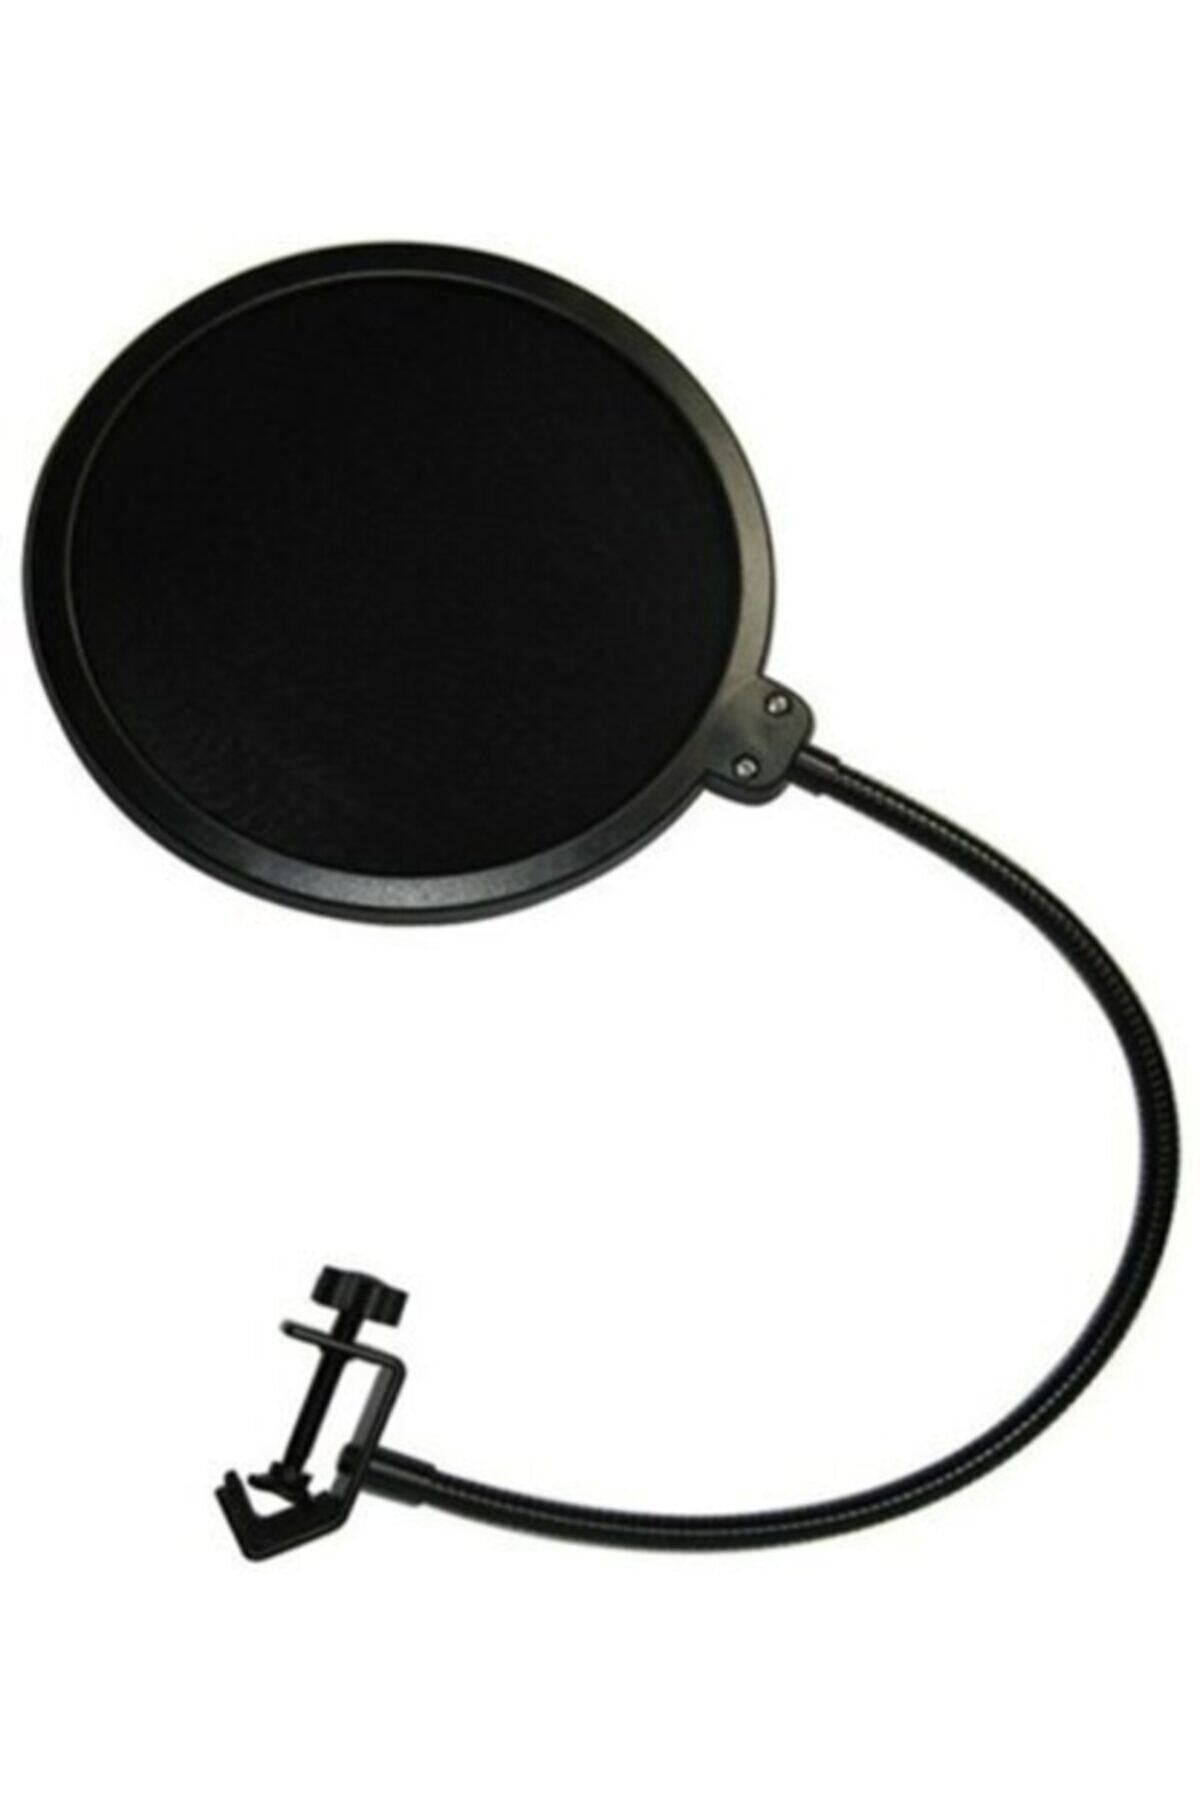 ADS SAYWİN Stüdyo Mikrofonu Için Pop Filtre - Pop Filter Gürültü Engelleyici